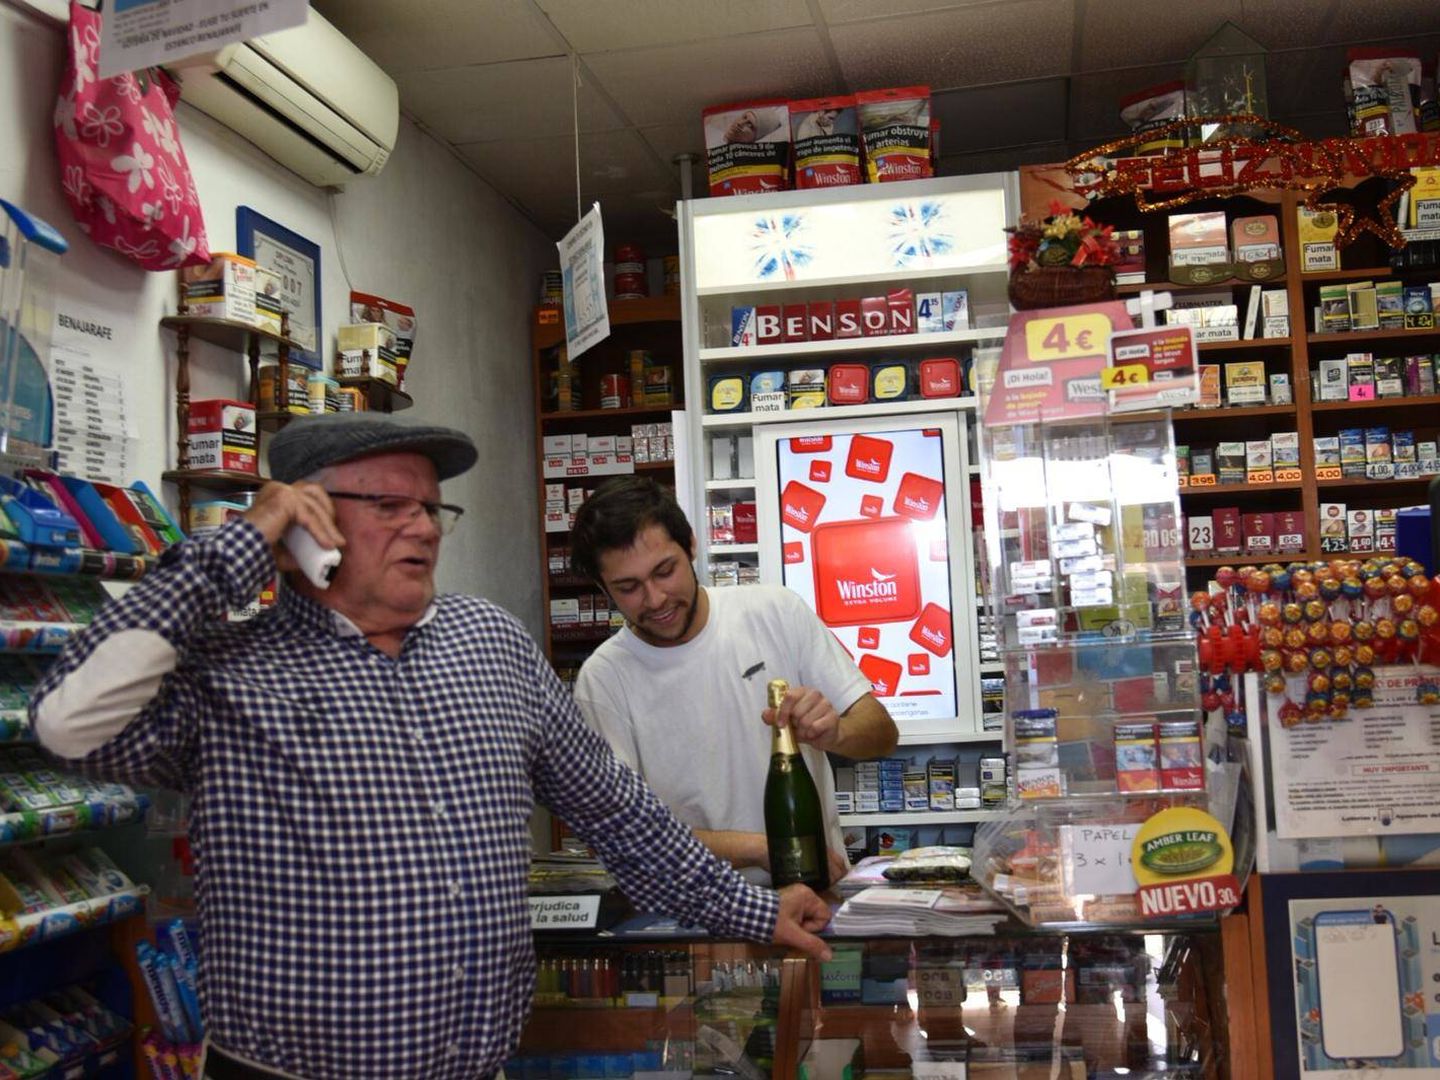 Pepe hablando por teléfono, junto a Douglas, el empleado de la administración de lotería. (Toñi Guerrero)